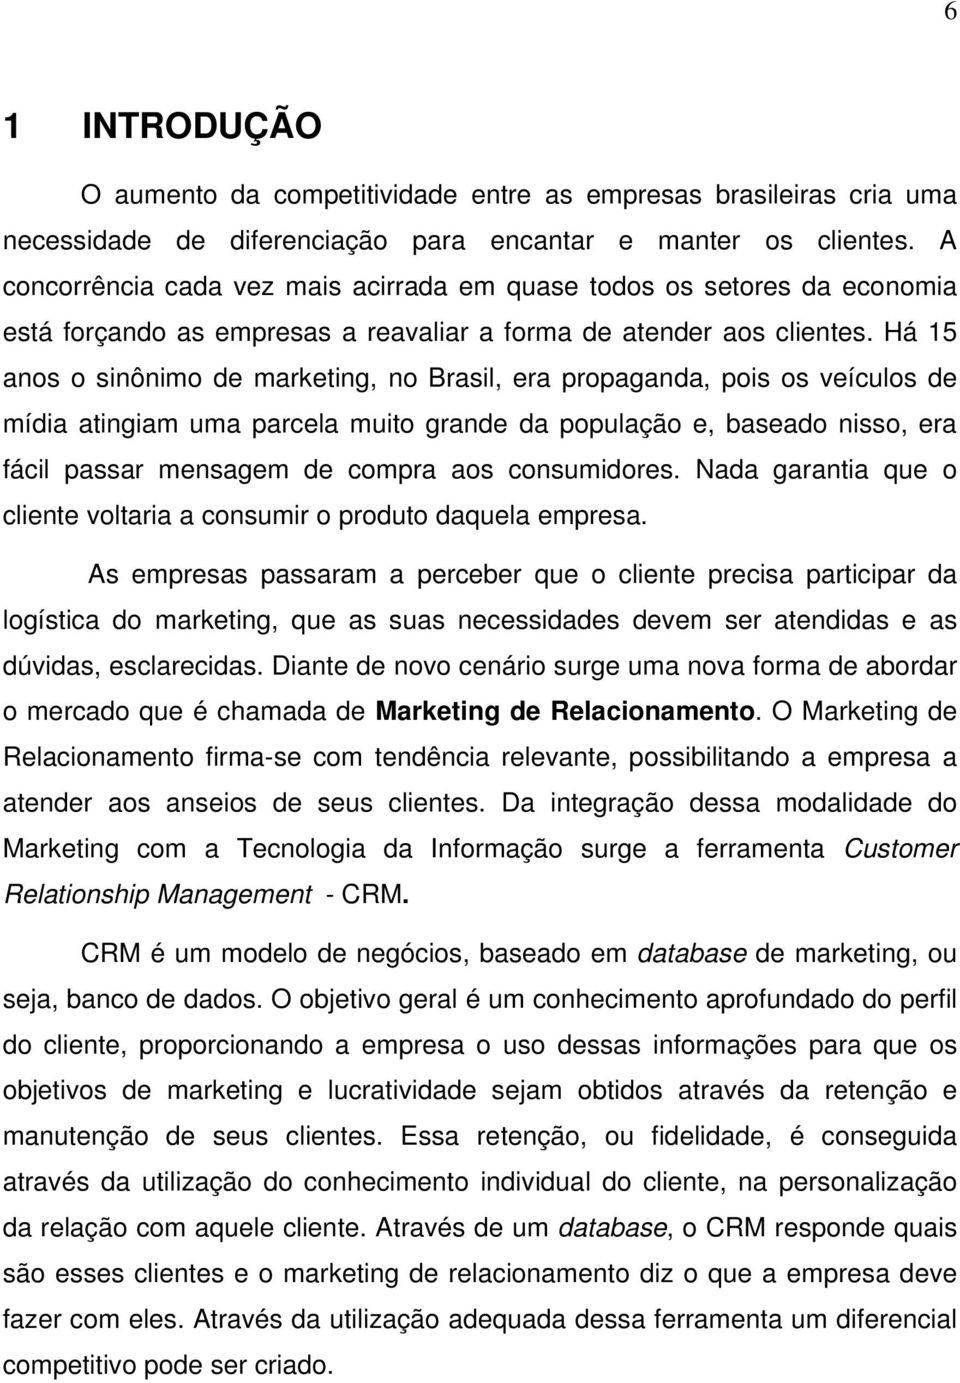 Há 15 anos o sinônimo de marketing, no Brasil, era propaganda, pois os veículos de mídia atingiam uma parcela muito grande da população e, baseado nisso, era fácil passar mensagem de compra aos